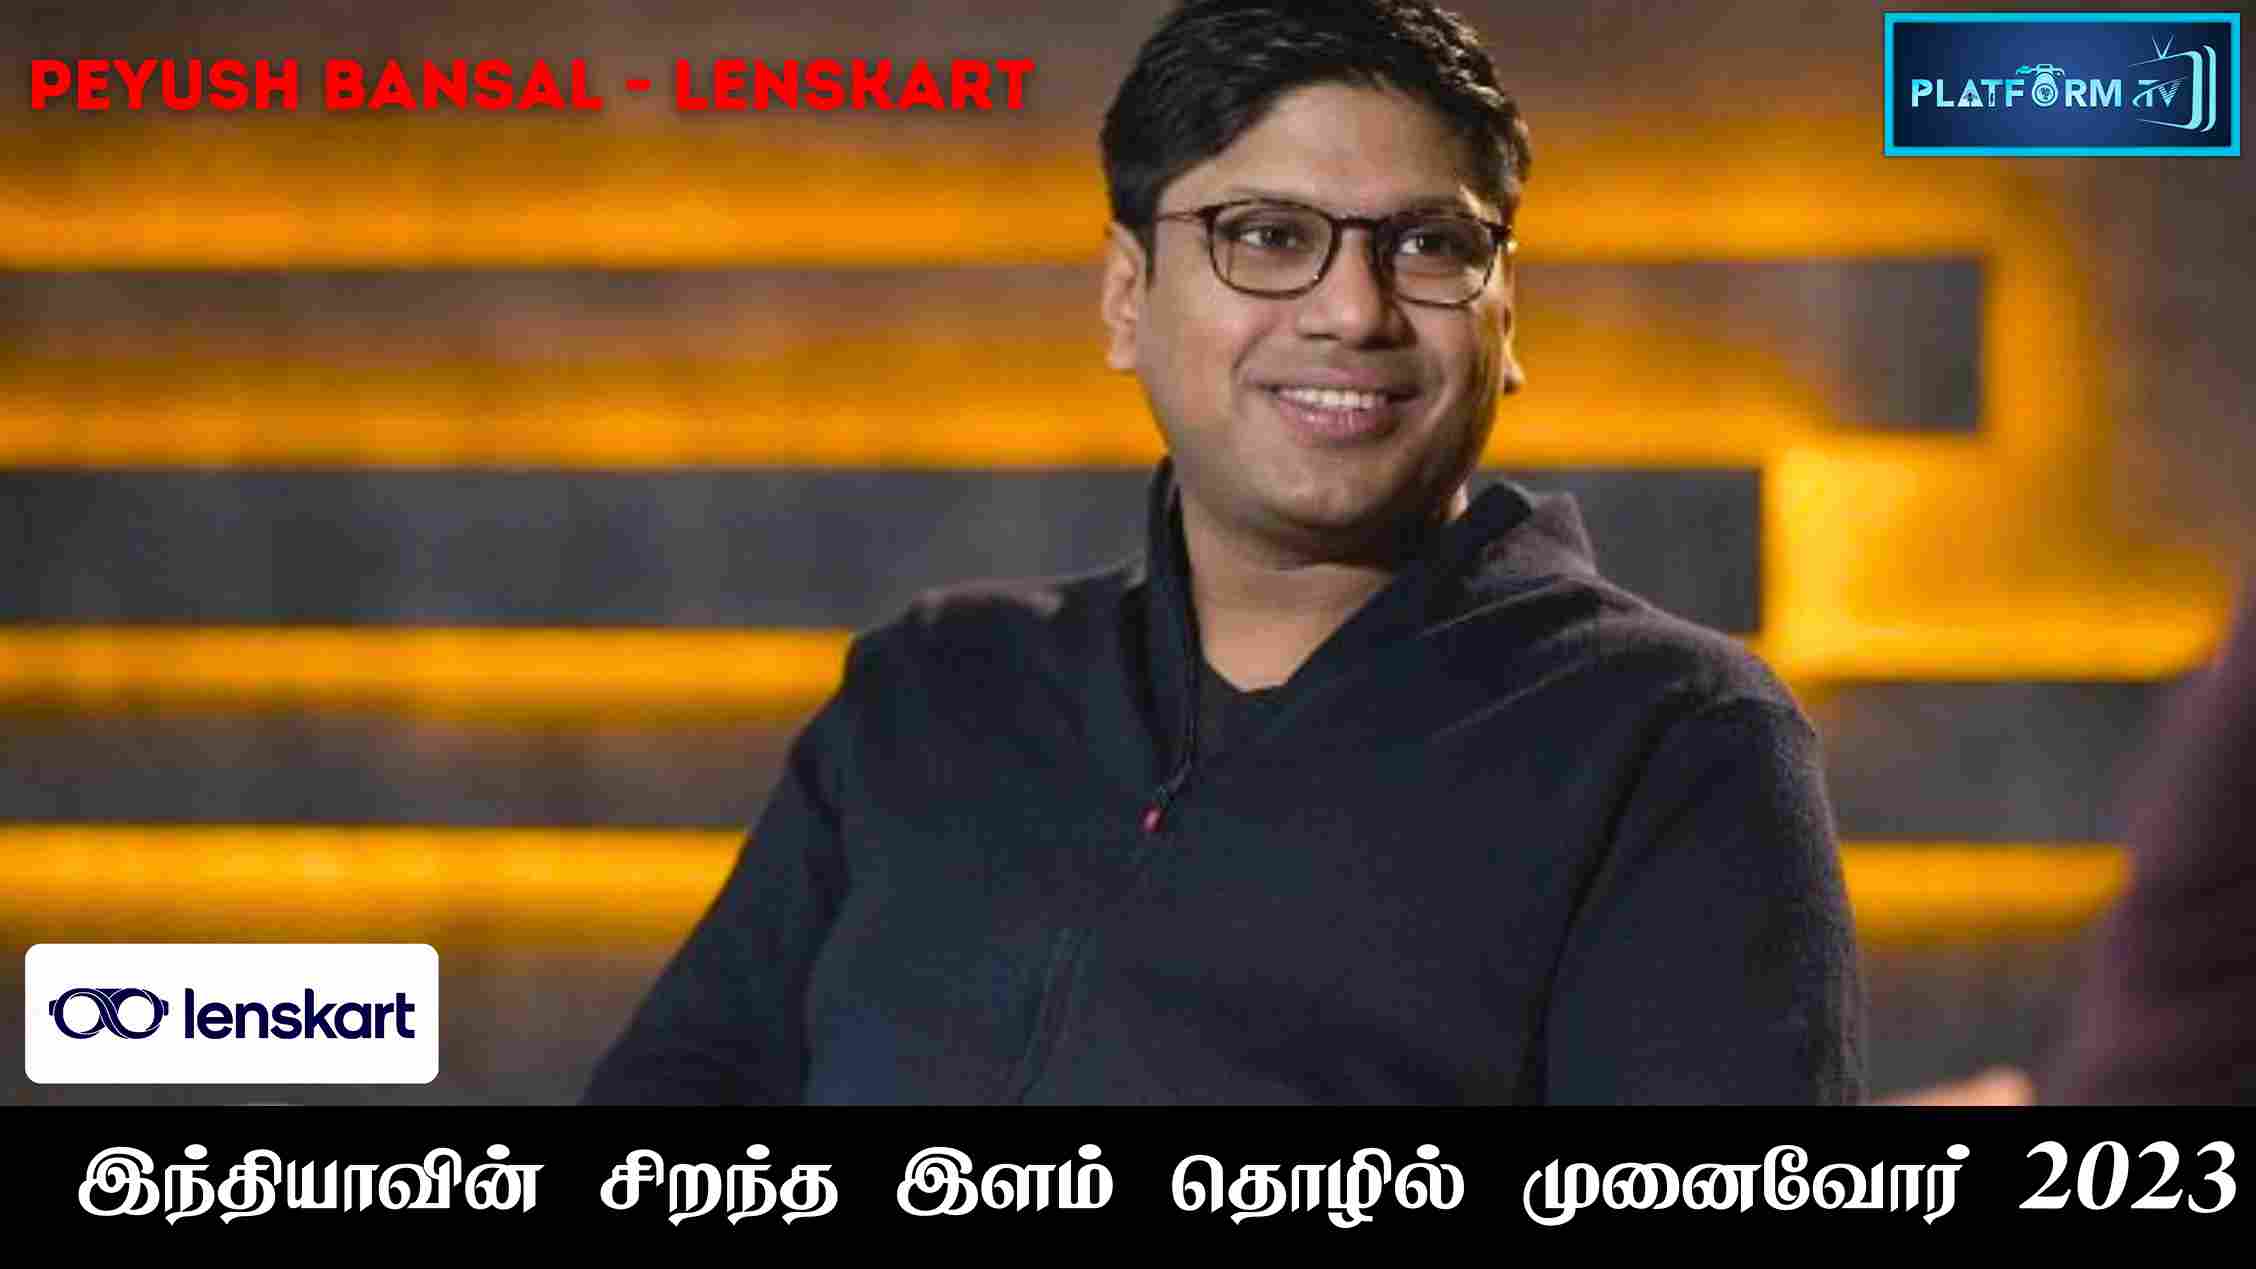 Lenskart Founder Peyush Bansal - Platform Tamil